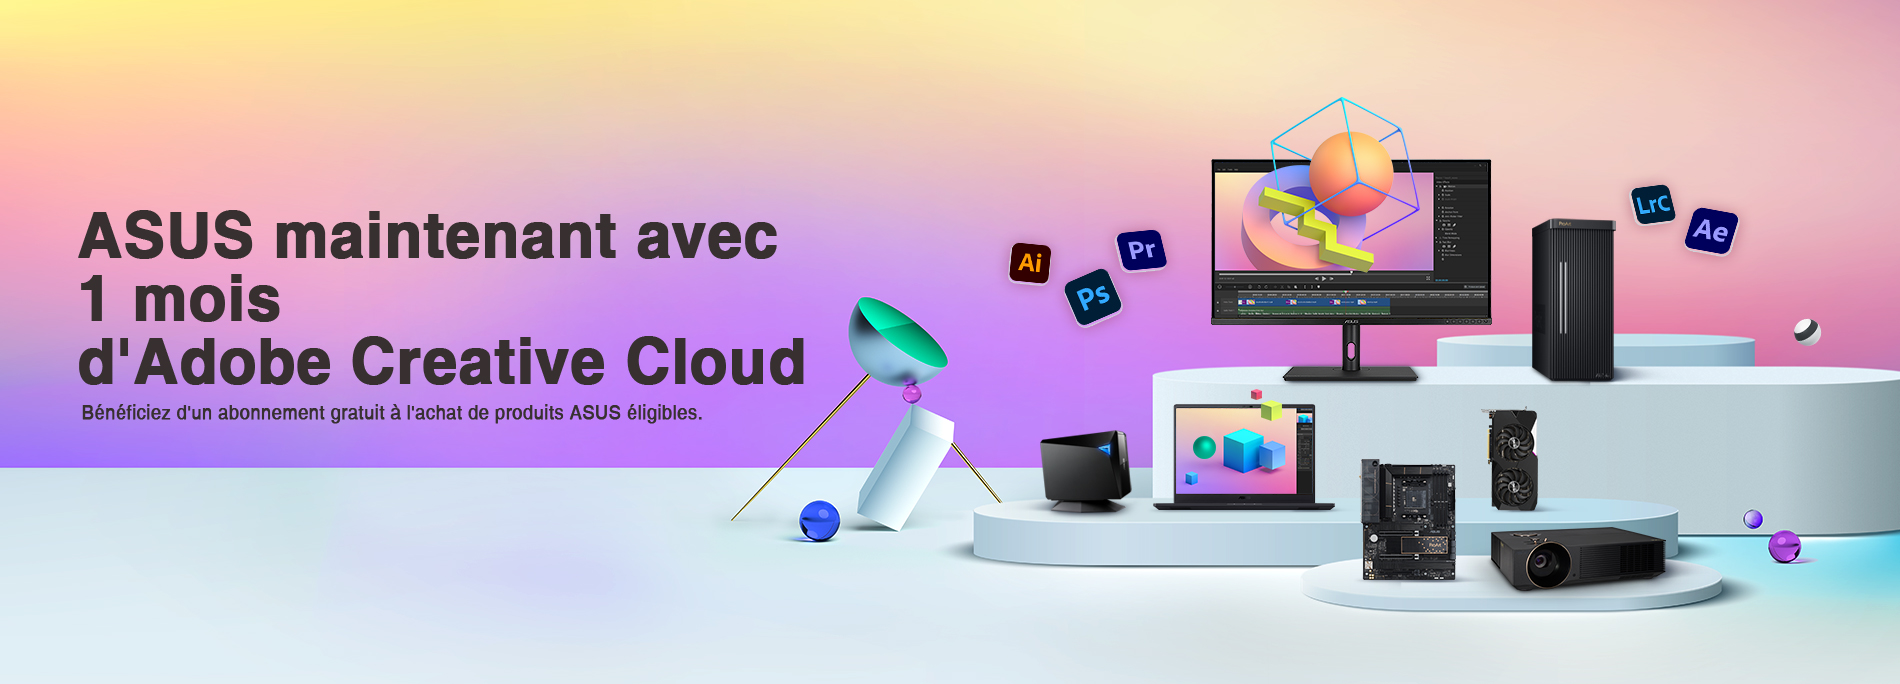 ASUS maintenant avec 1 mois d'Adobe Creative Cloud